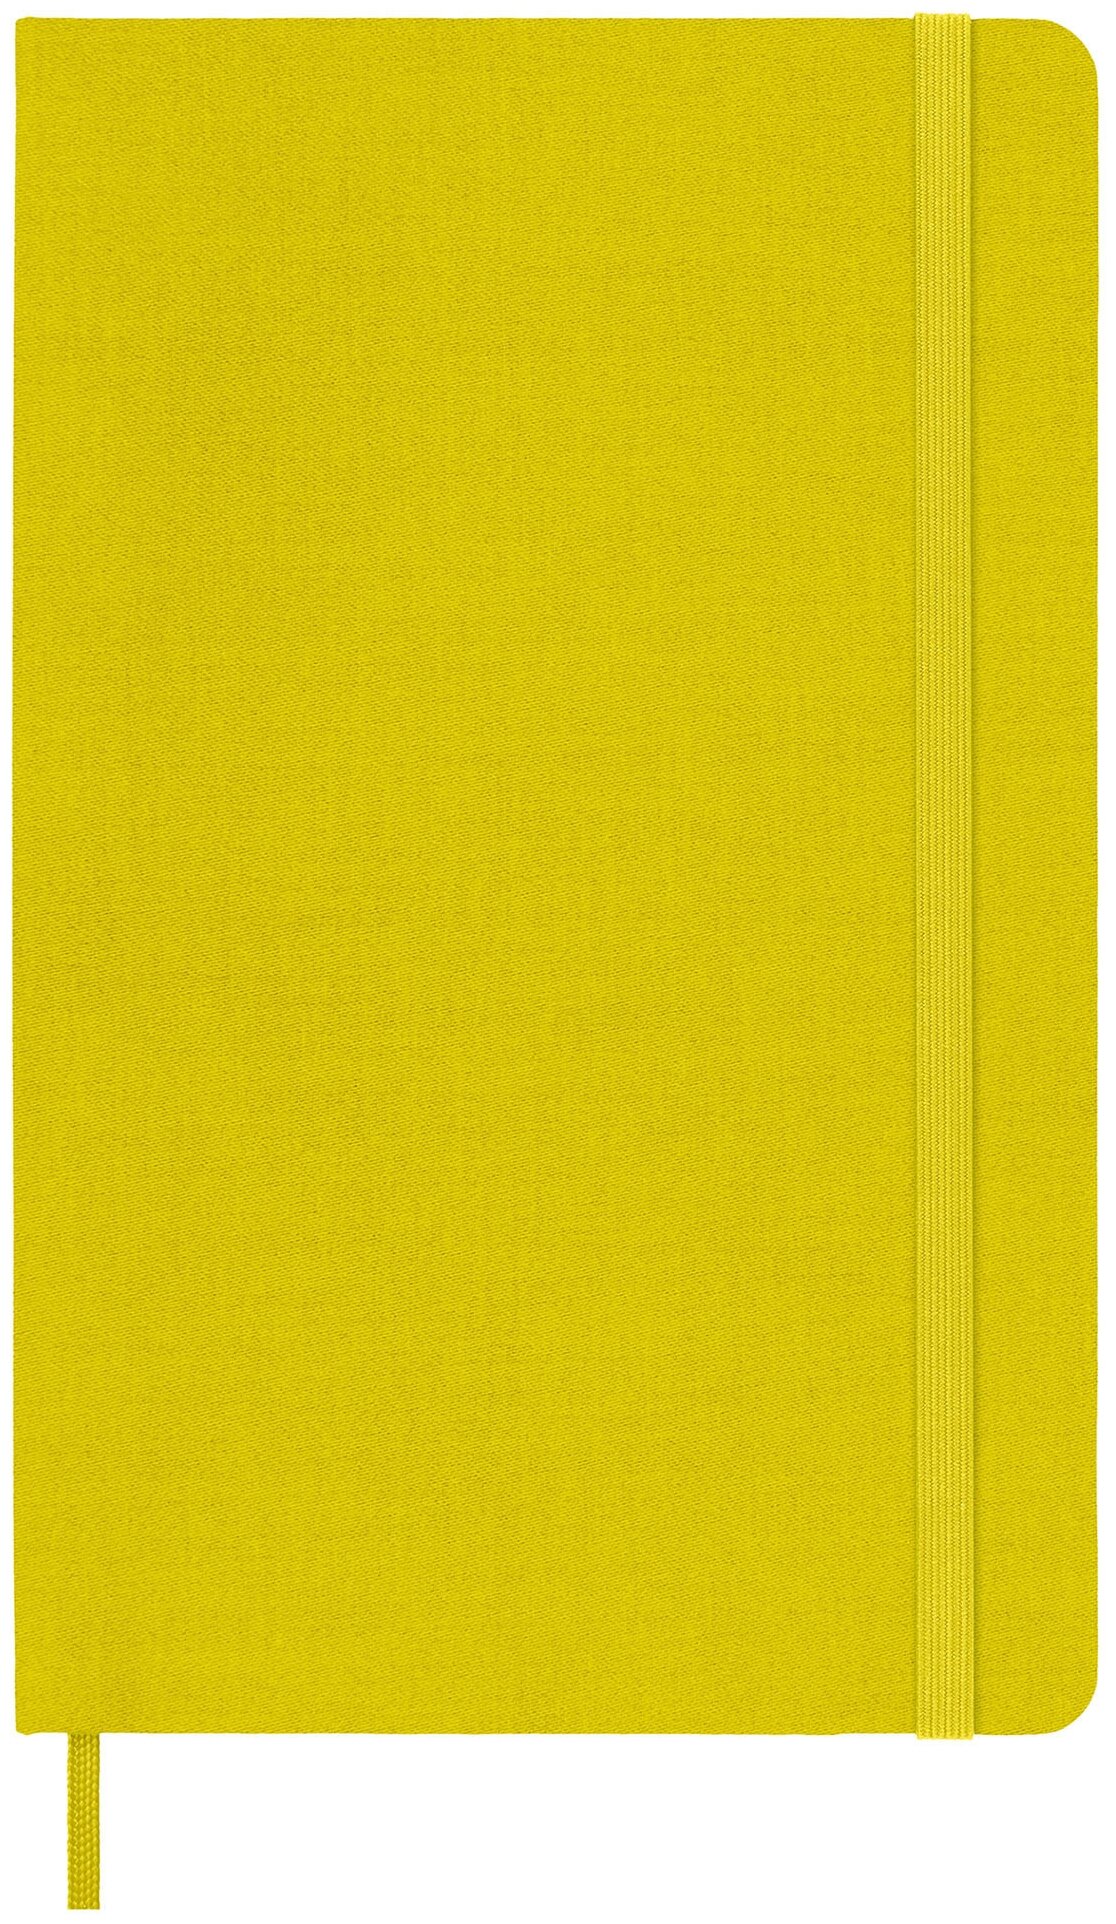 Блокнот Moleskine CLASSIC SILK Large 130х210мм обложка текстиль 240стр. линейка твердая обложка желтый